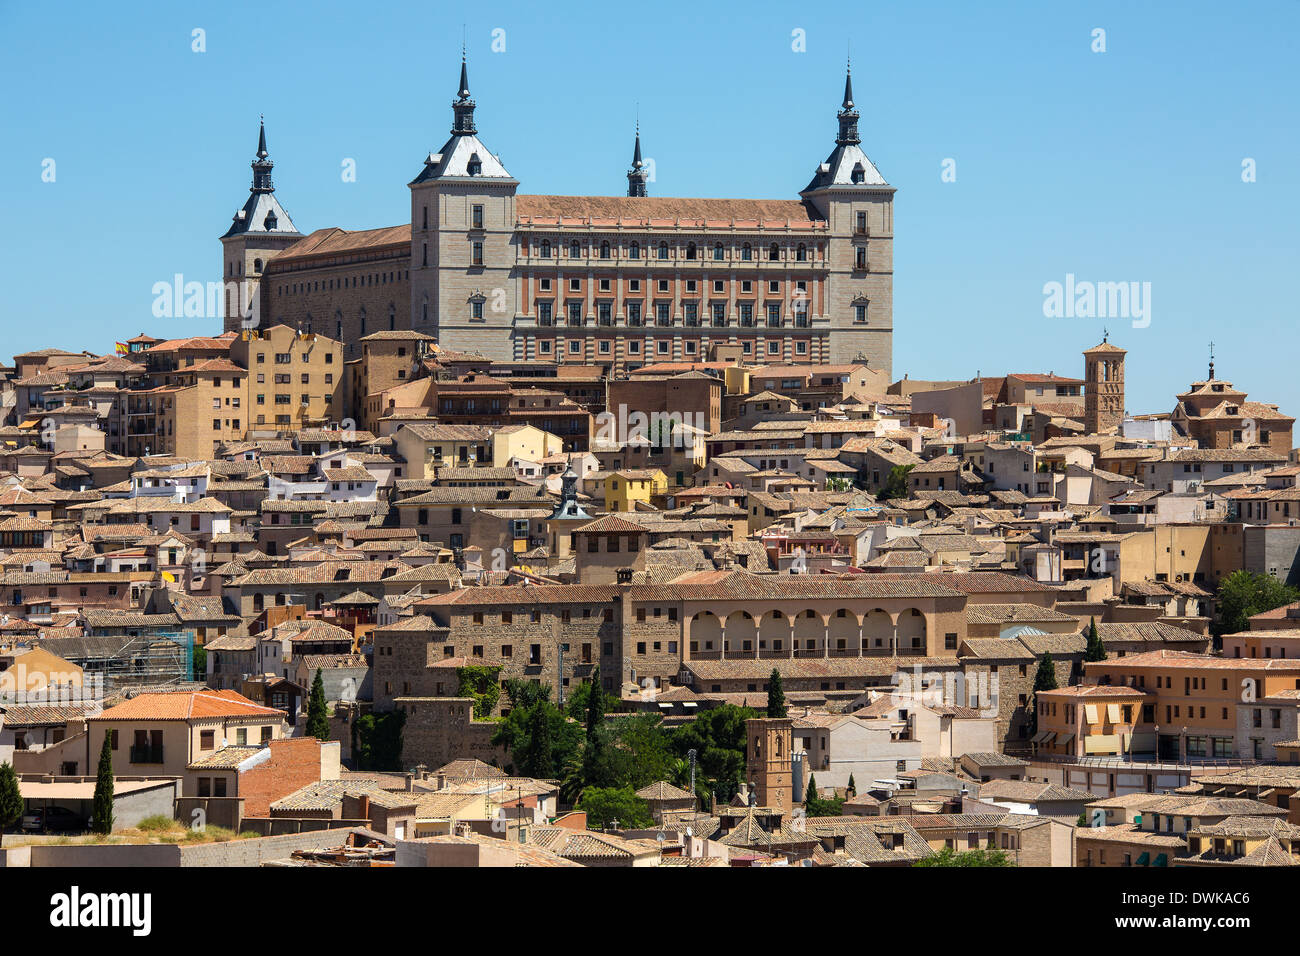 L'Alcazar et de la ville de Tolède dans la région de Castille-La Manche du centre de l'Espagne. Banque D'Images